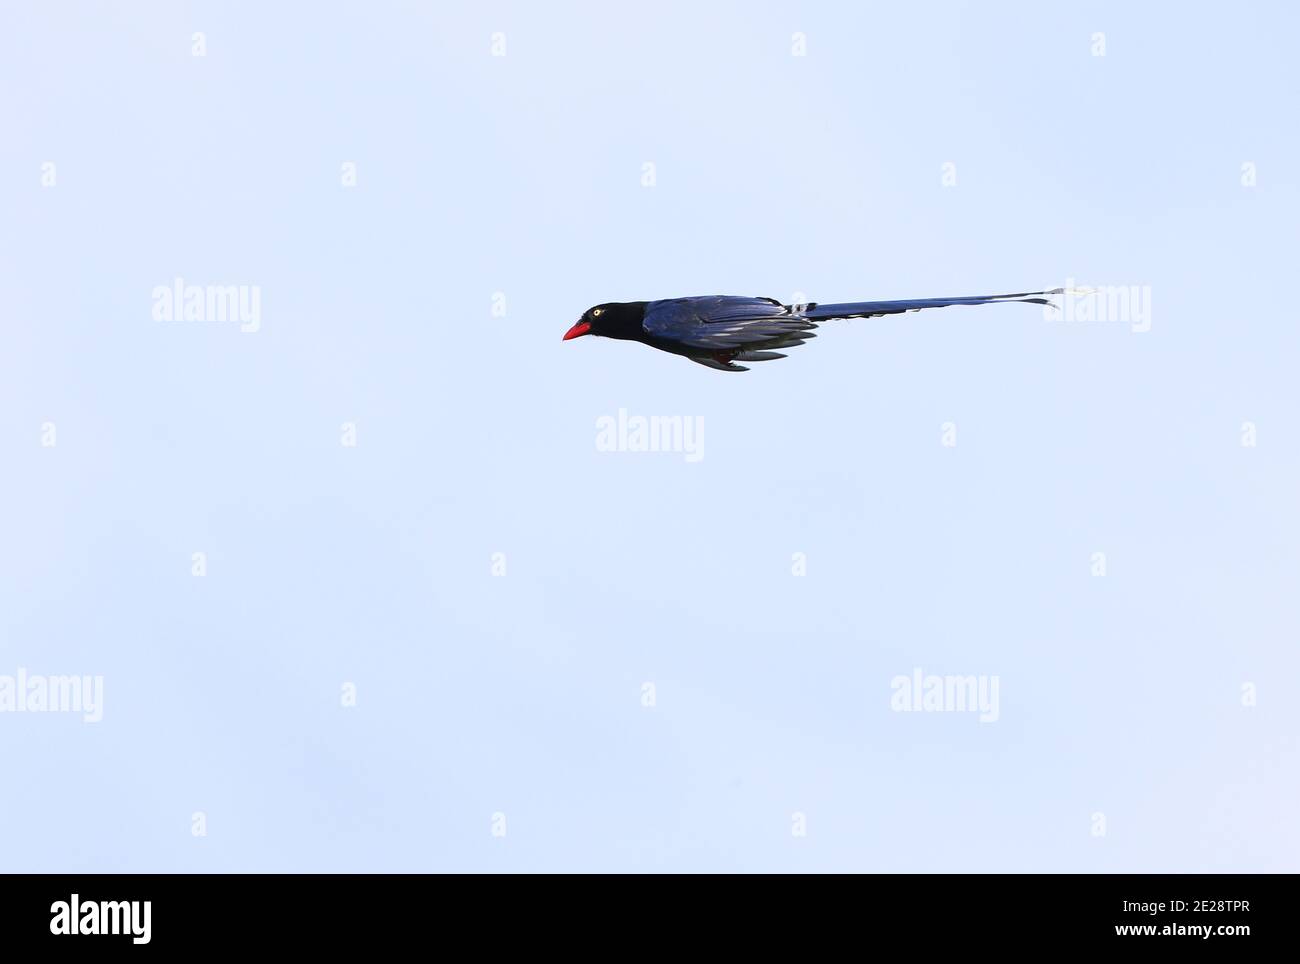 Taiwan blue magpie, Taiwan magpie, Formosan blue magpie (Urocissa caerulea), in flight, side view, Taiwan, Aowanda Stock Photo